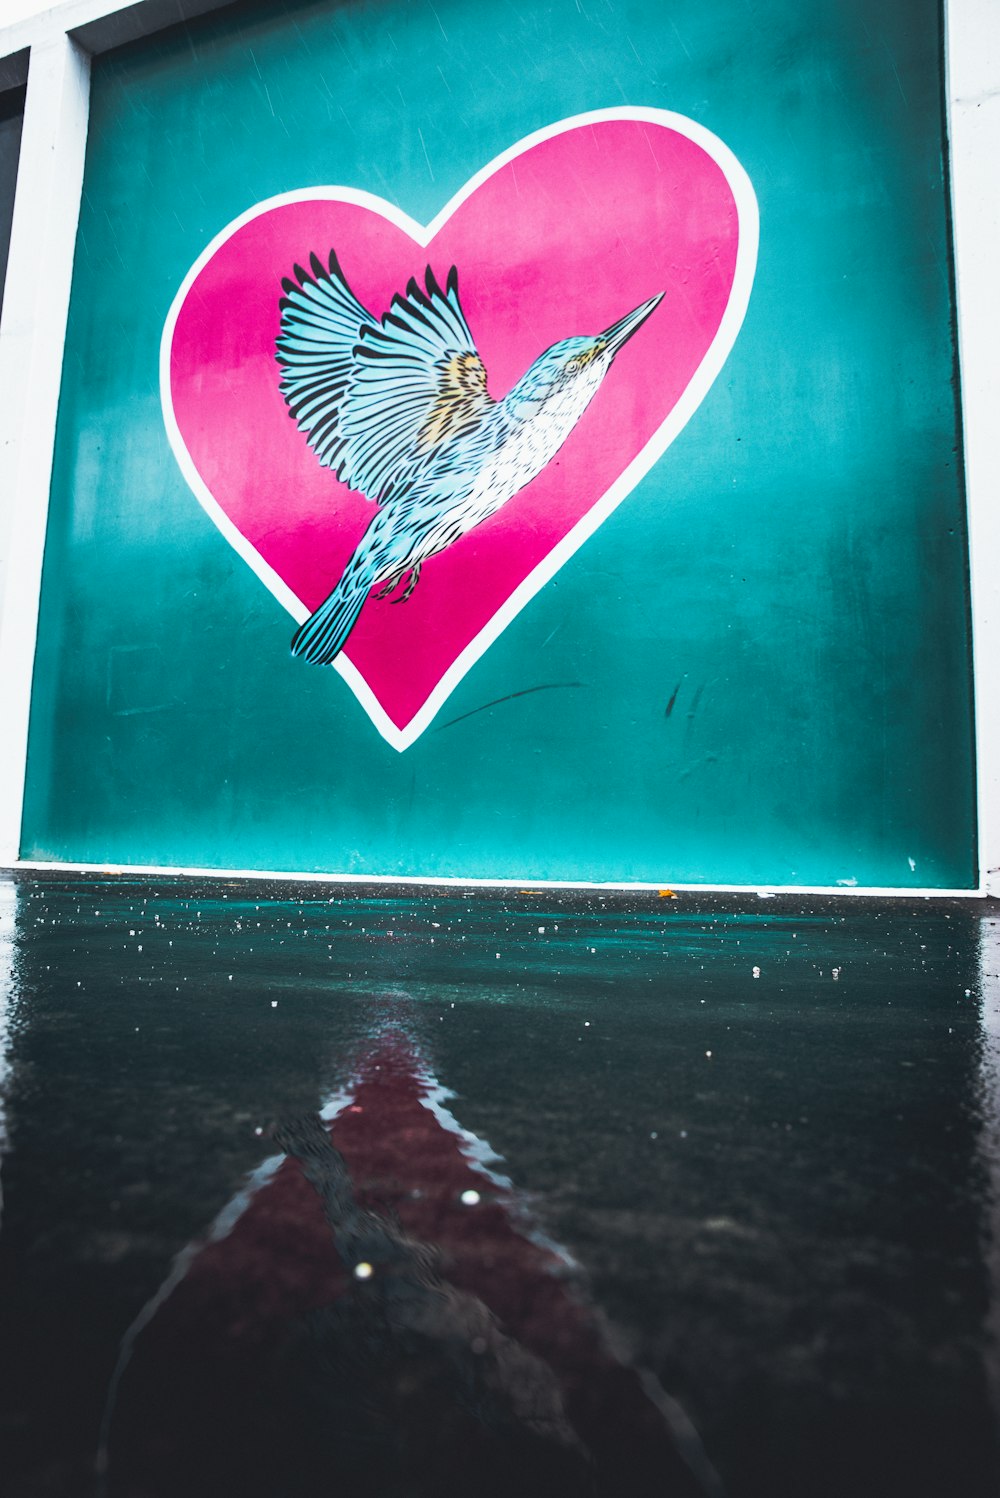 Adler auf Herz Hintergrundmalerei